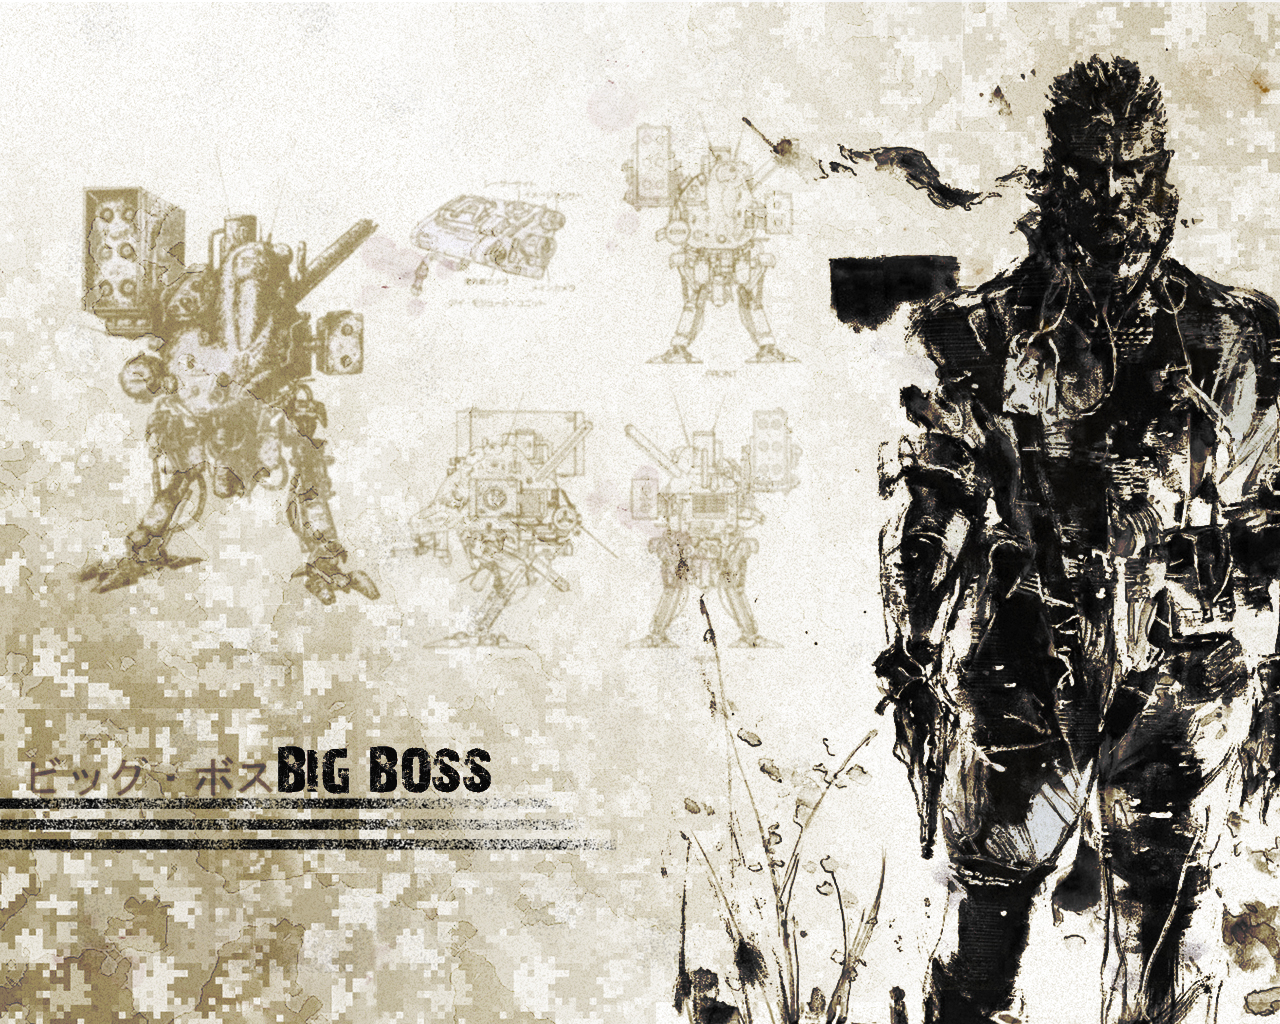 Big Boss - MGS wallpaper by Harmpie on DeviantArt